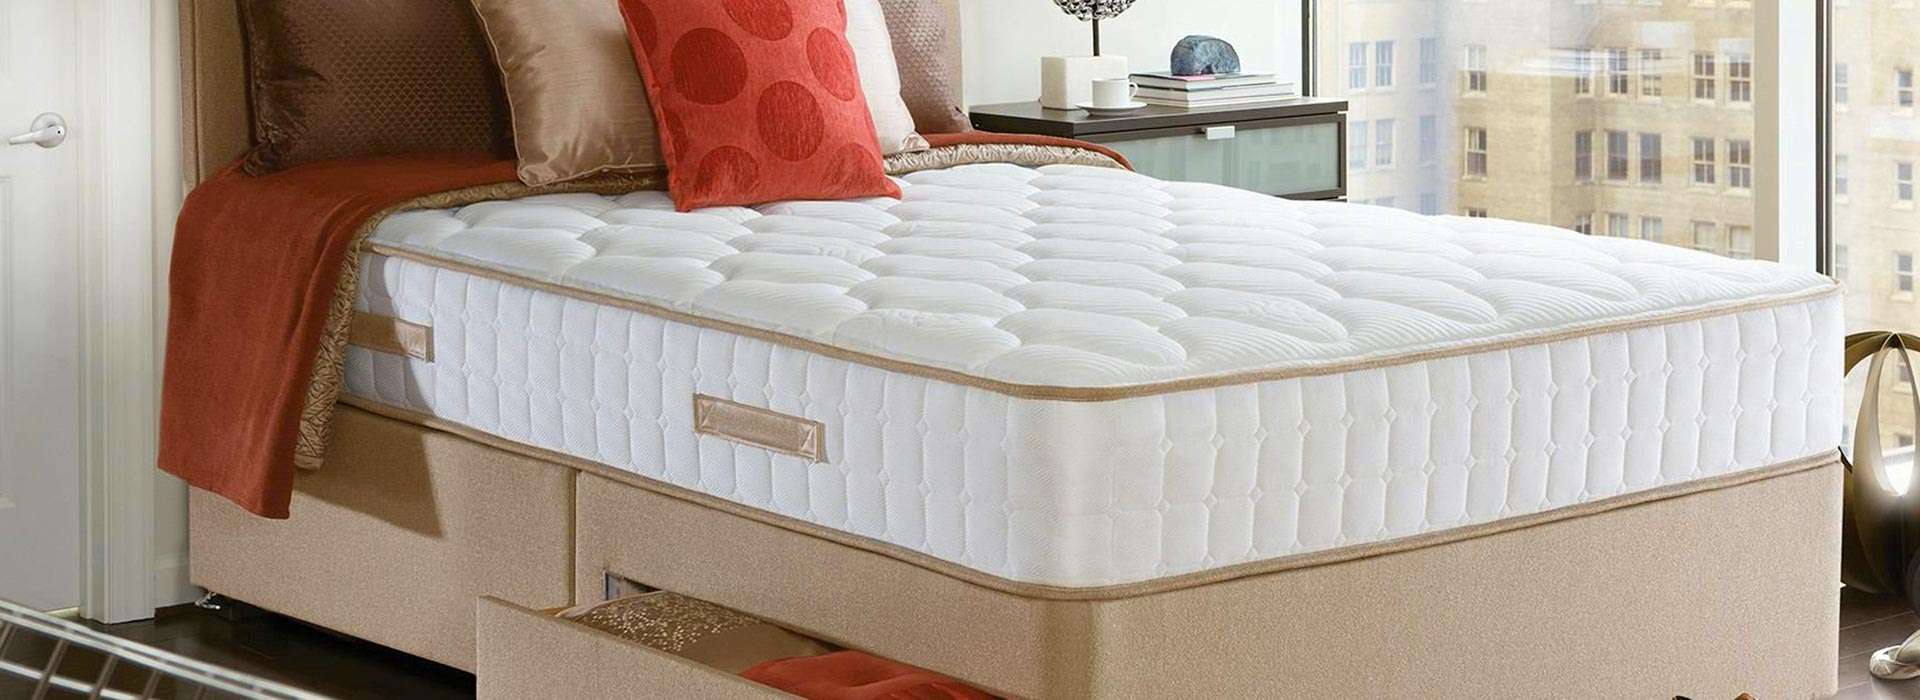 sleep revolution mattress reviews